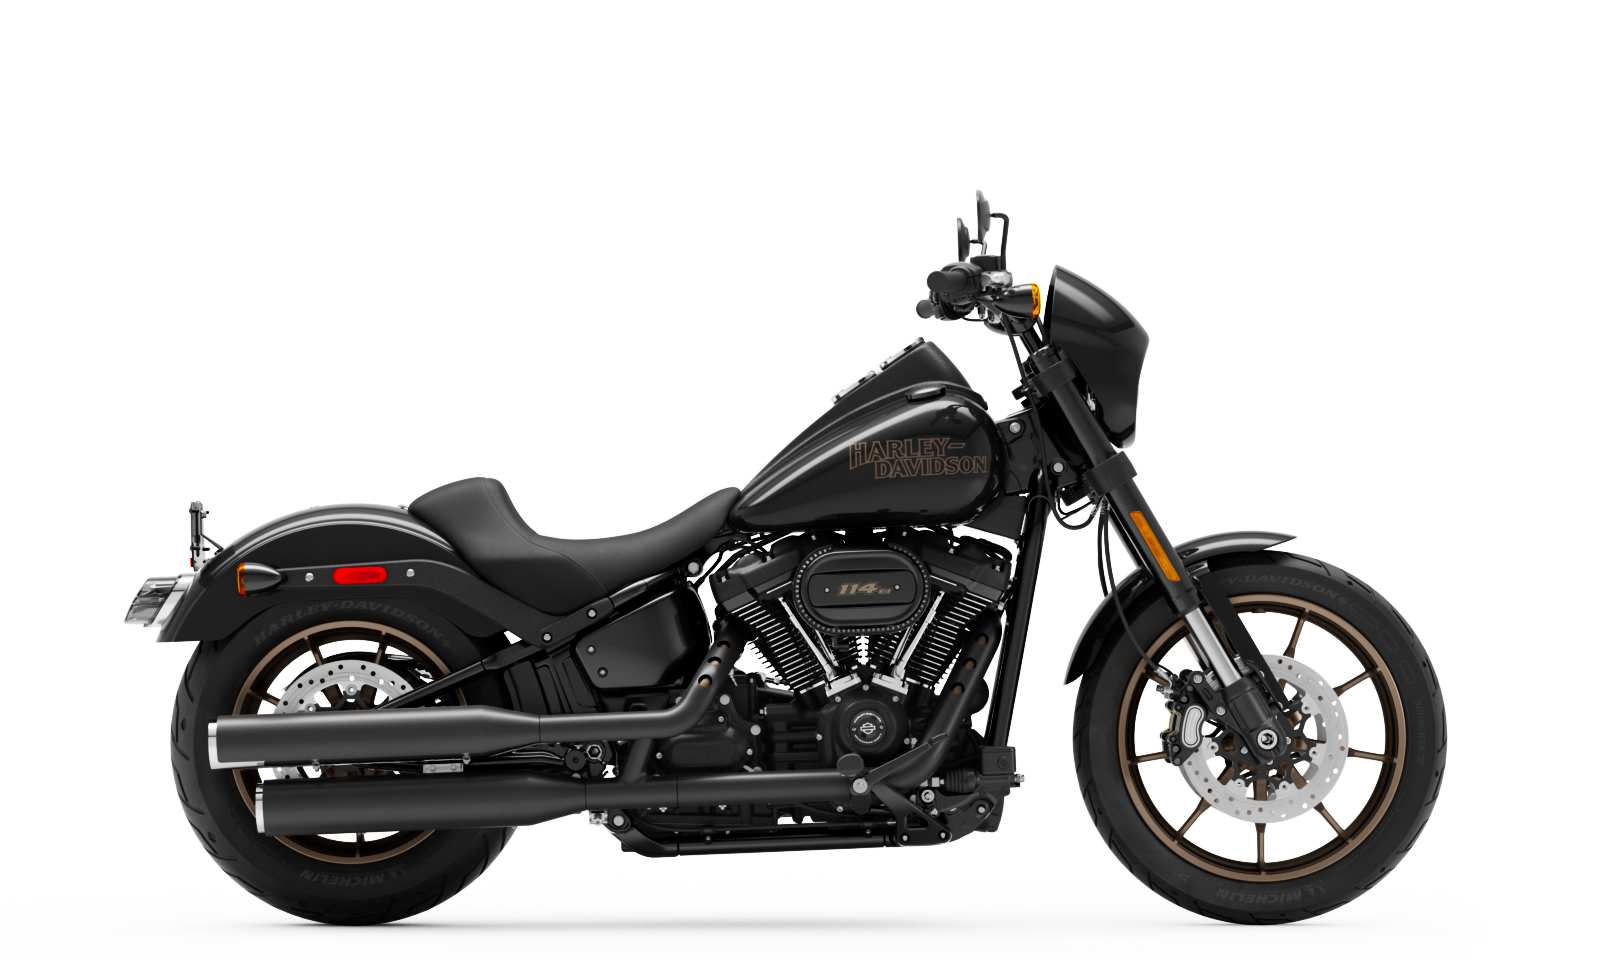 2021 Low Rider S Motorcycle | Harley-Davidson USA